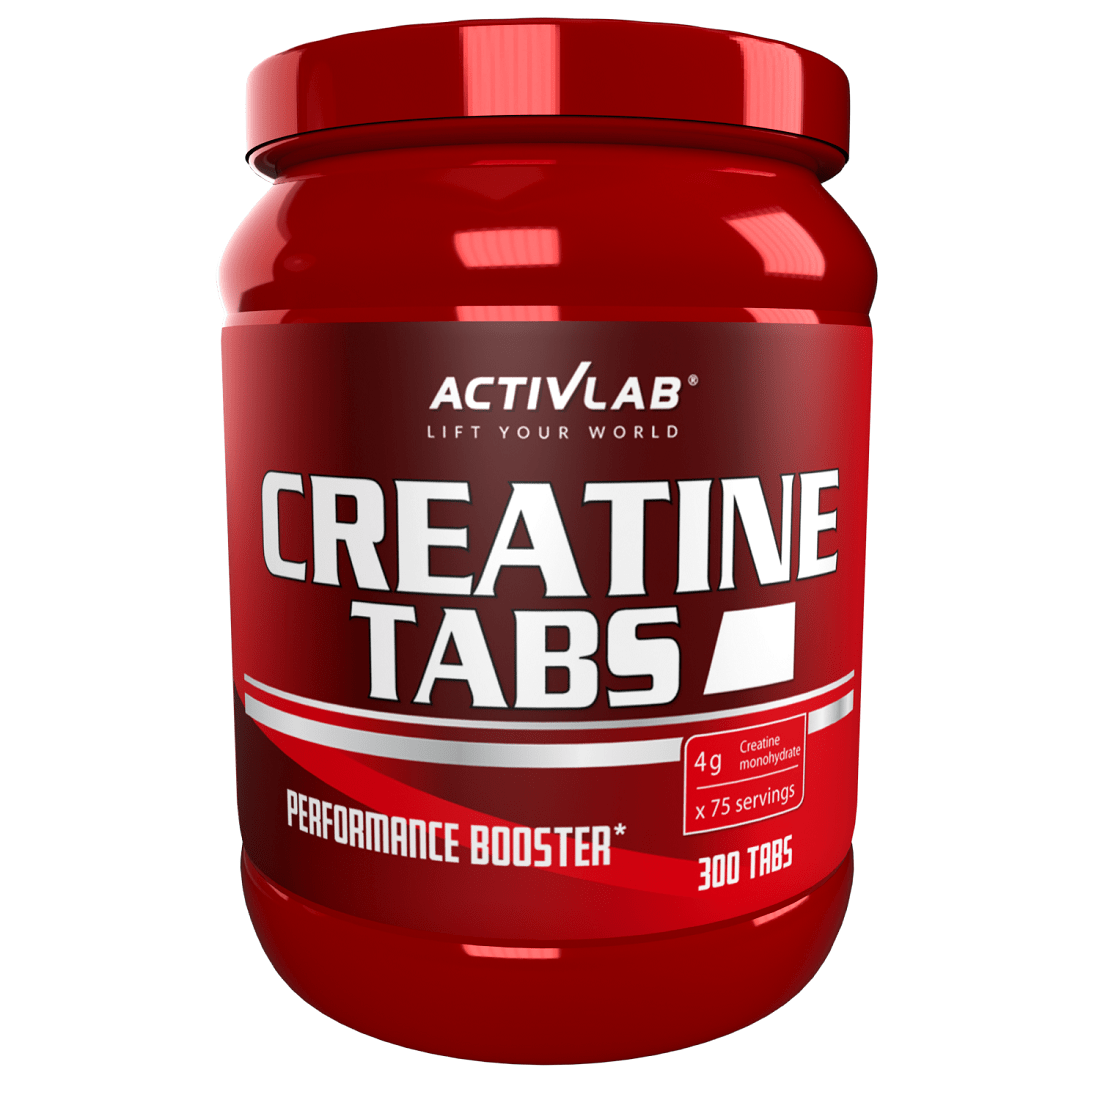 ActivLab Creatine tabletid, 300 tab.